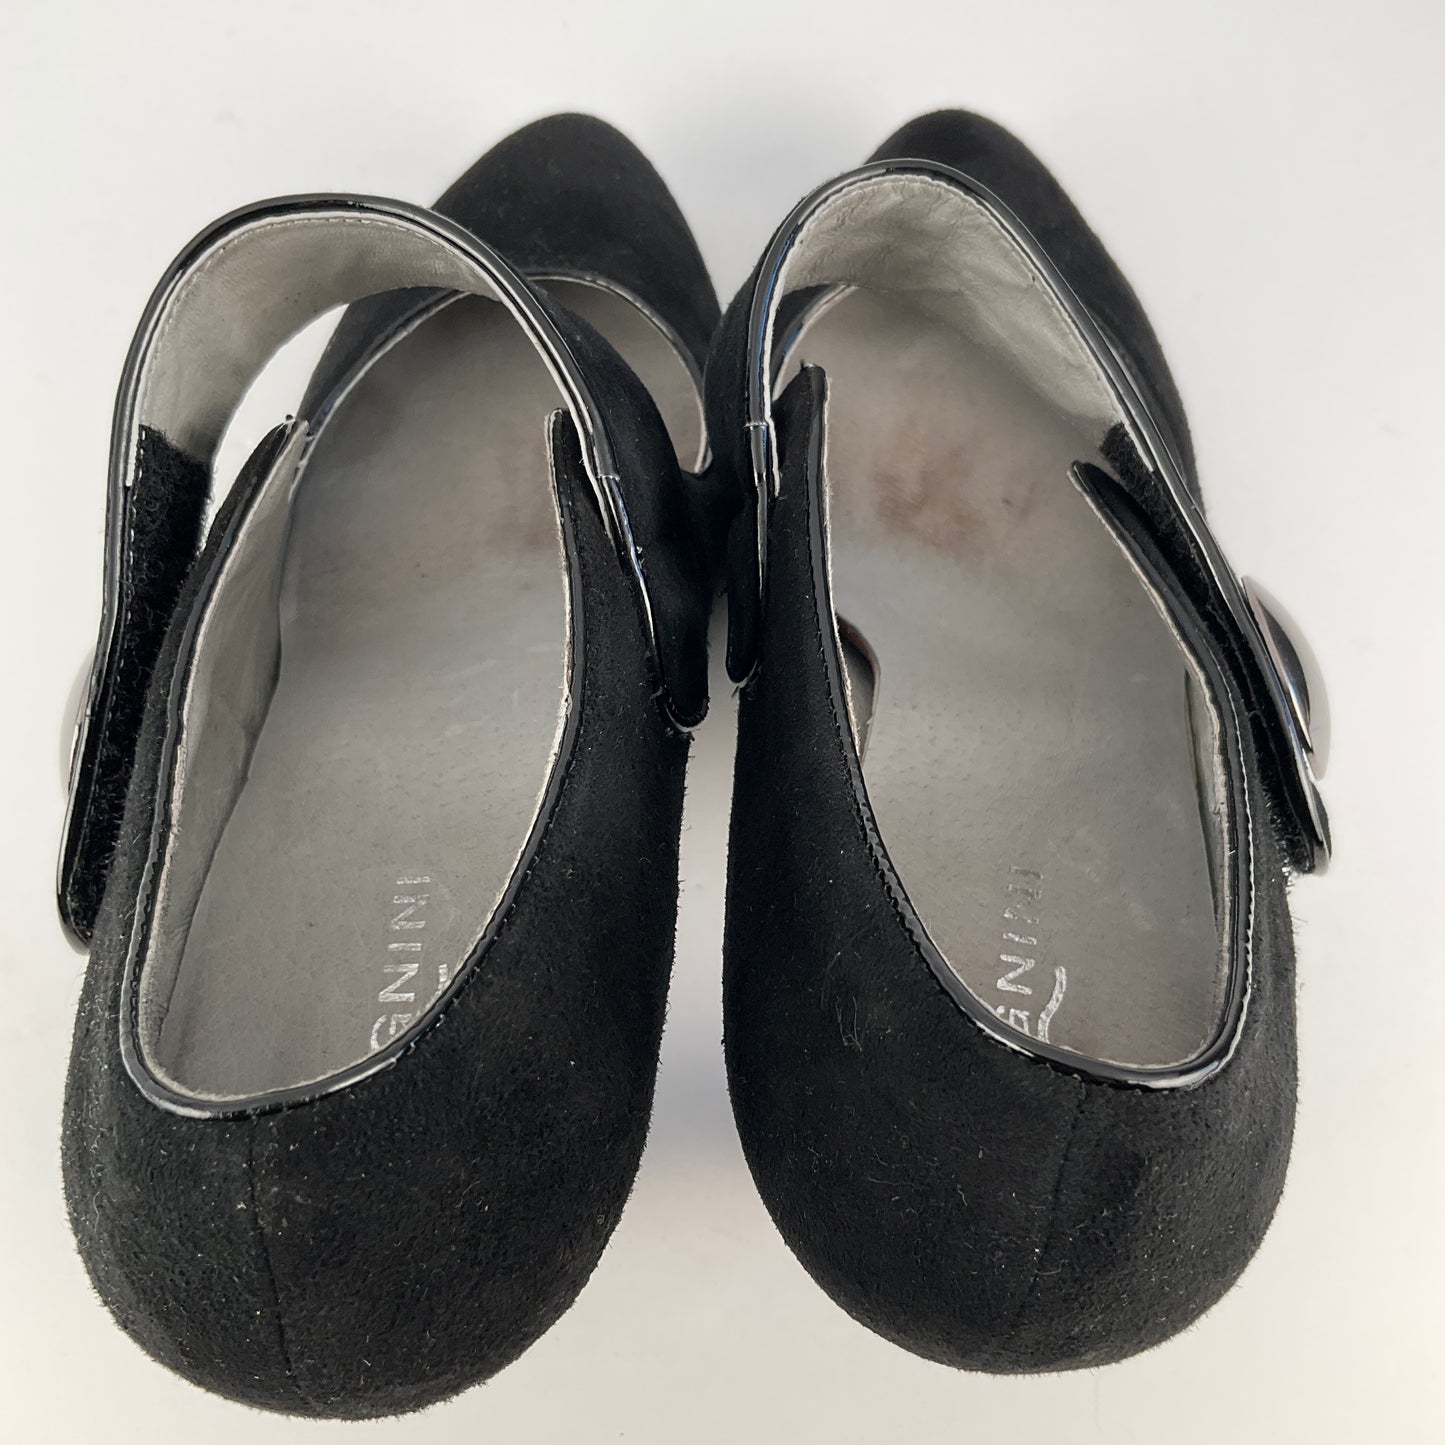 Magnini - Mary Jane Shoes - Size 41